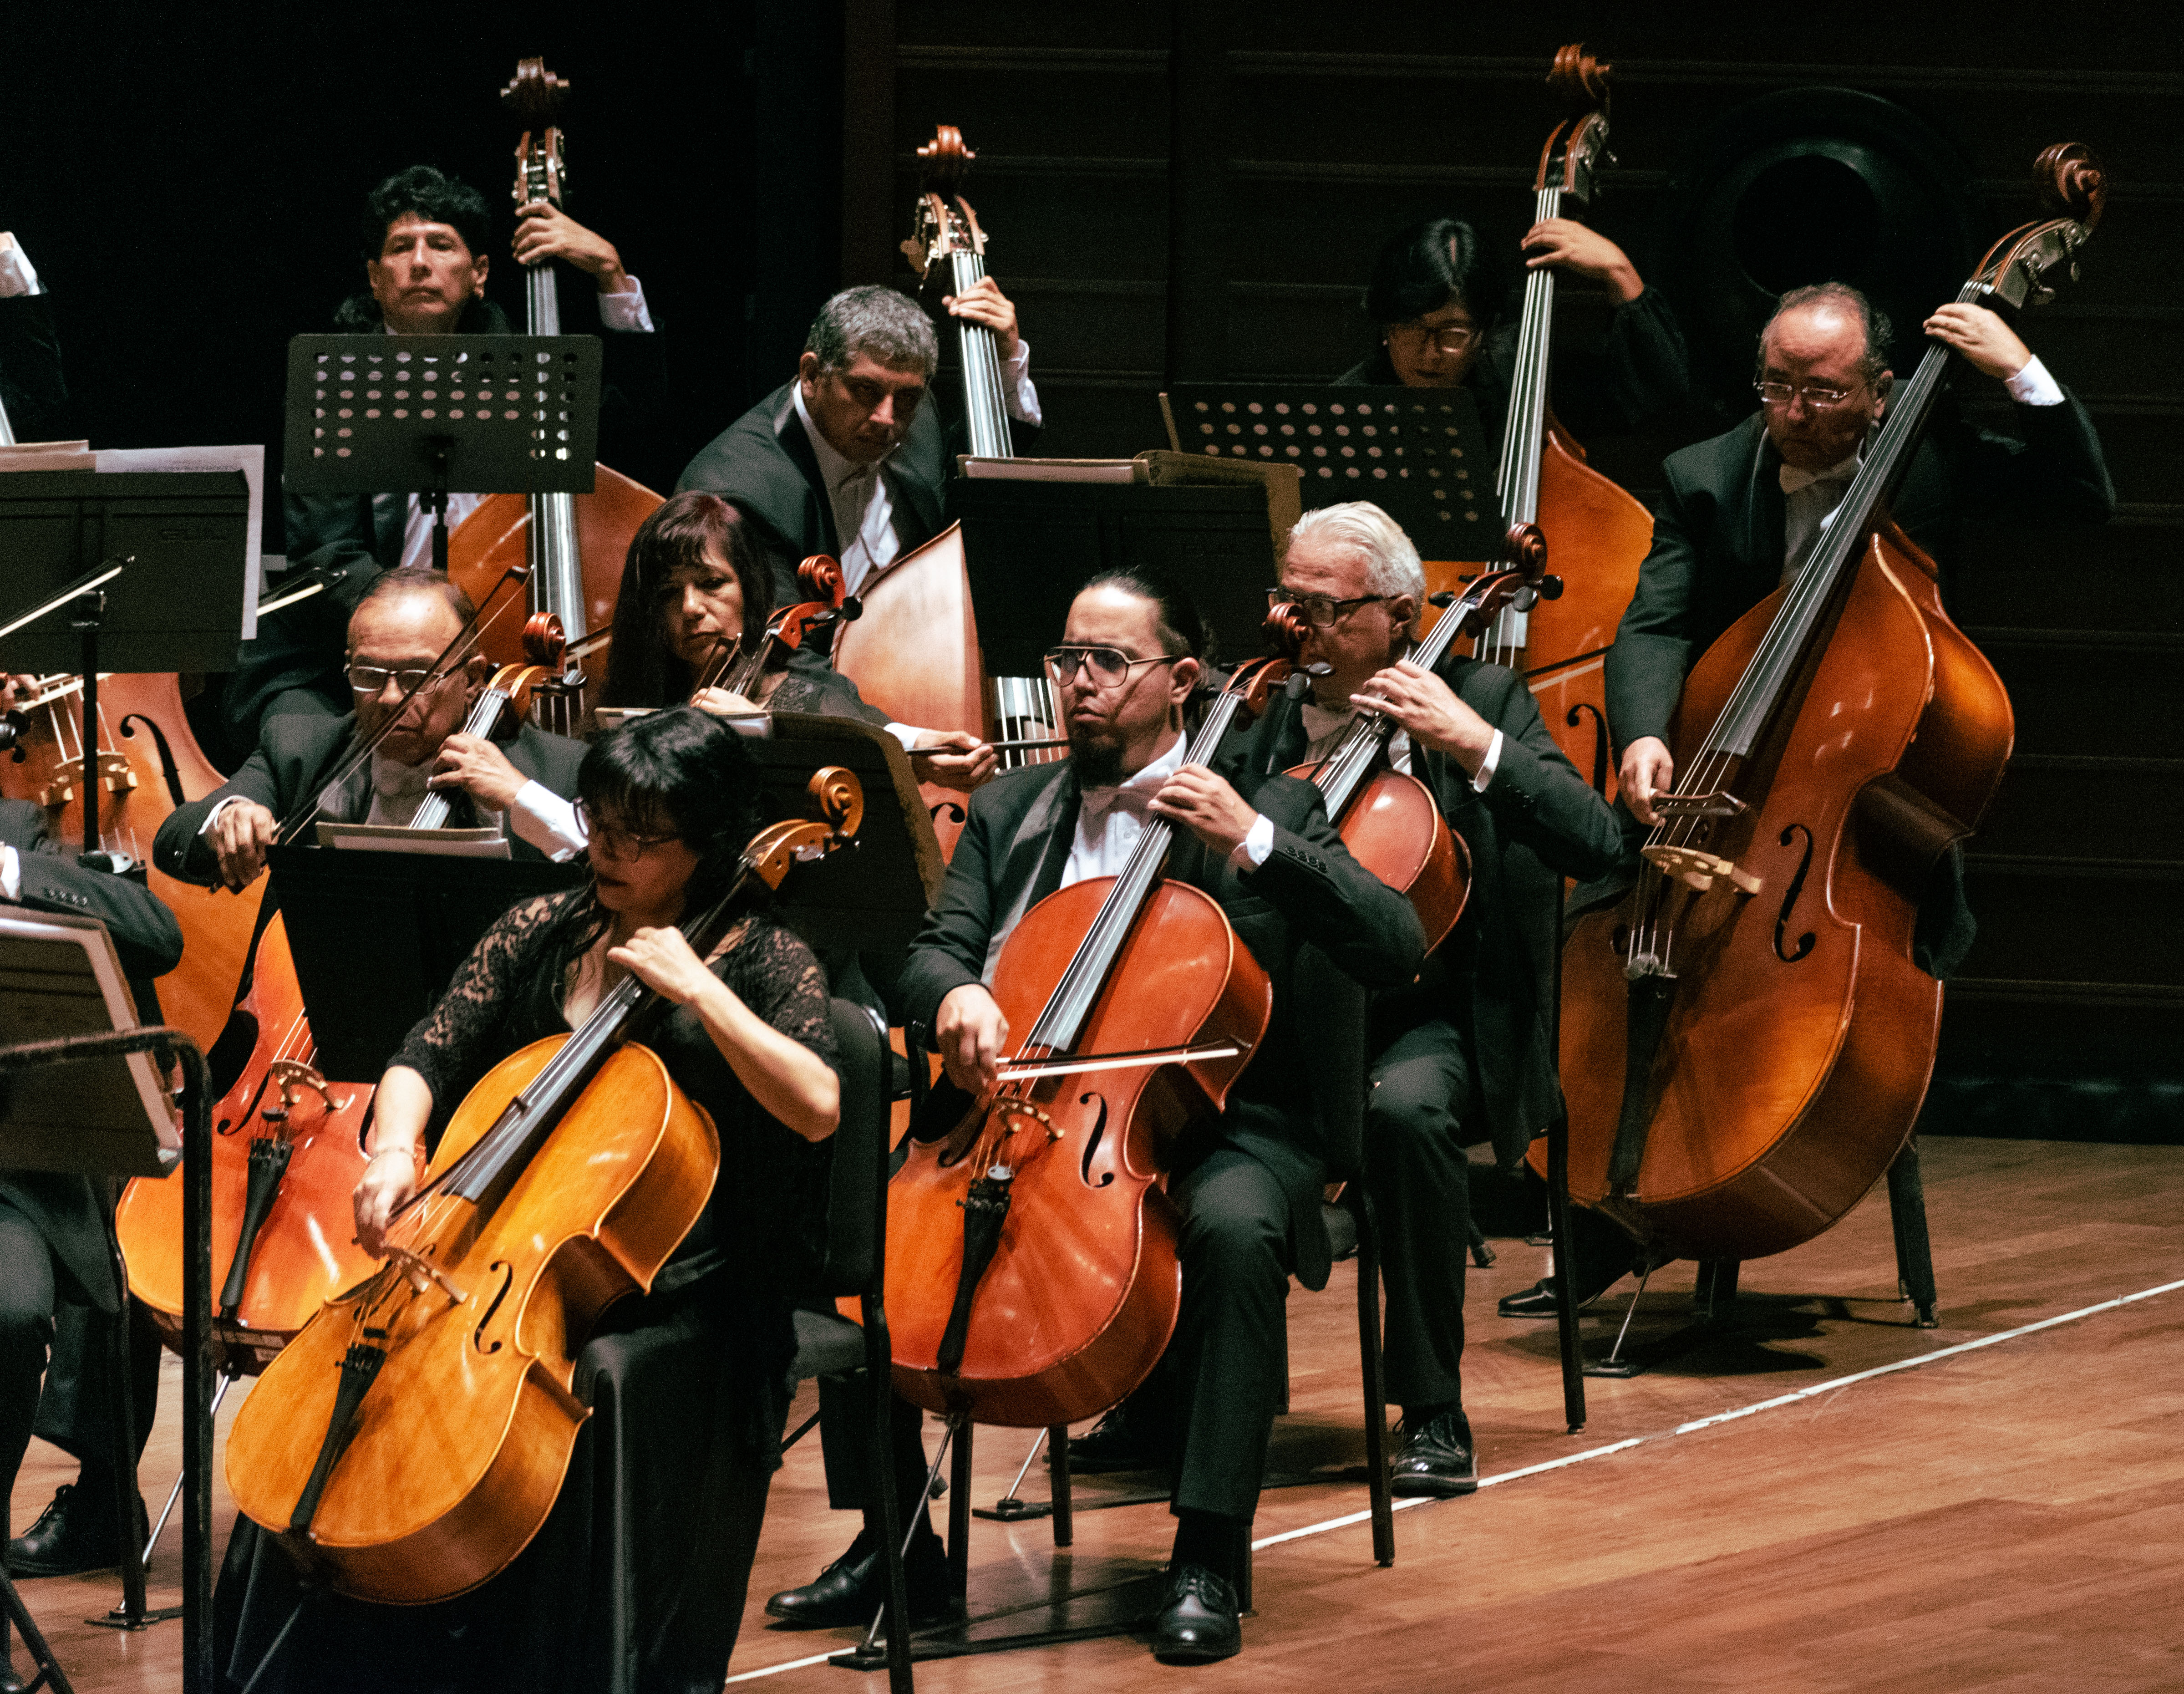 Ministerio de Cultura: Orquesta Sinfónica Nacional interpretará la Sinfonía No. 3 de Brahms en concierto gratuito 